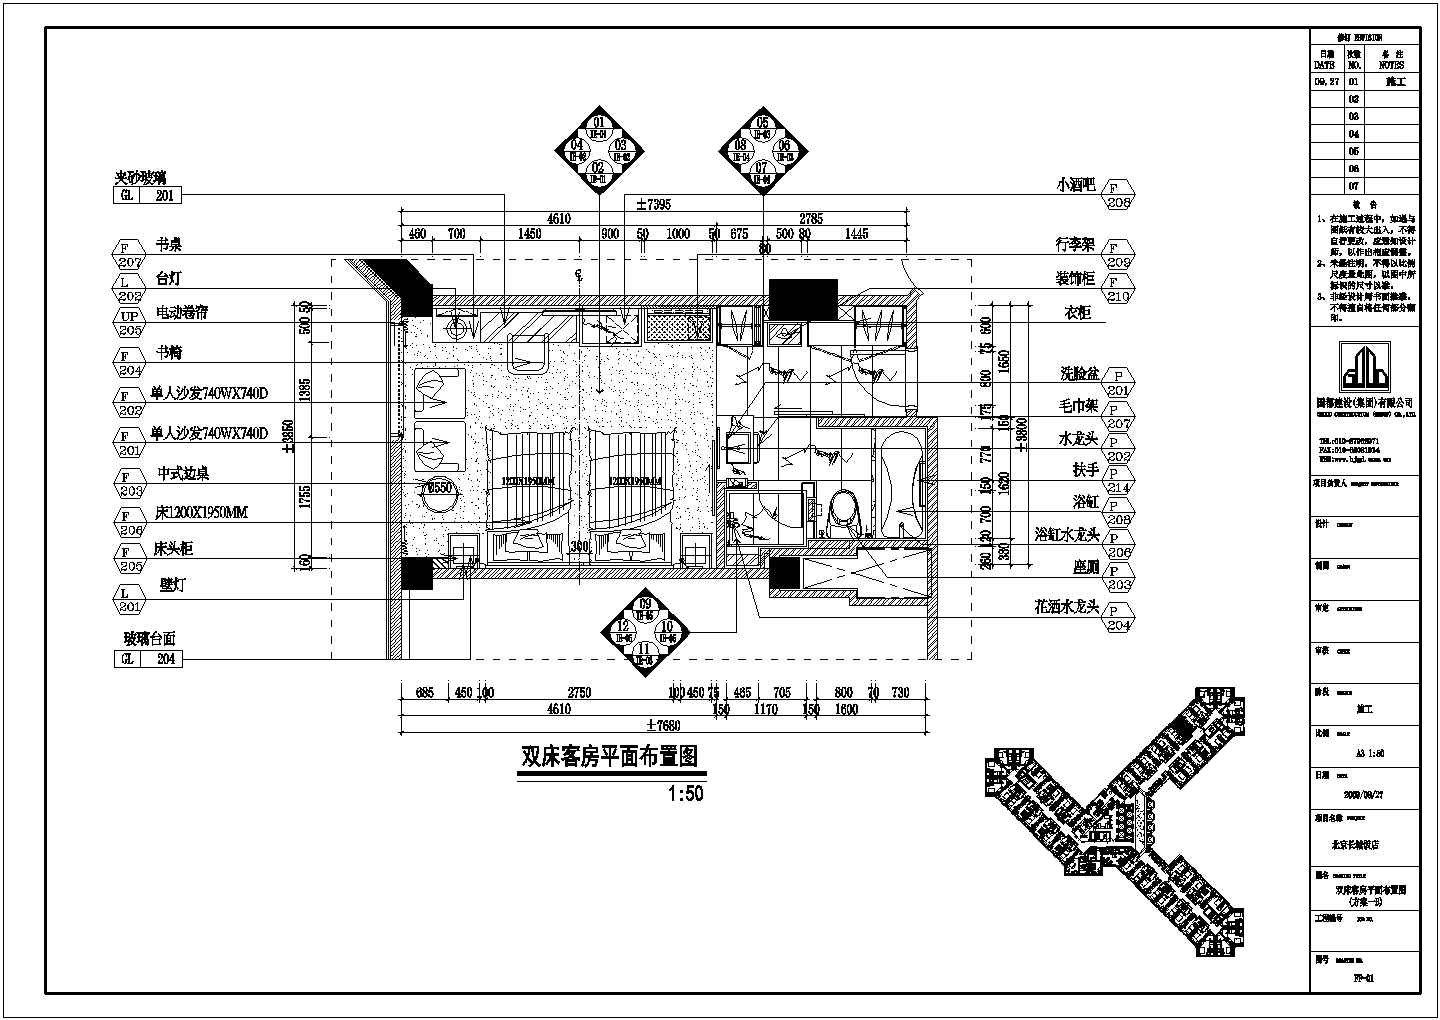 某地长城饭店客房样板间建筑室内装饰设计施工图(全套)